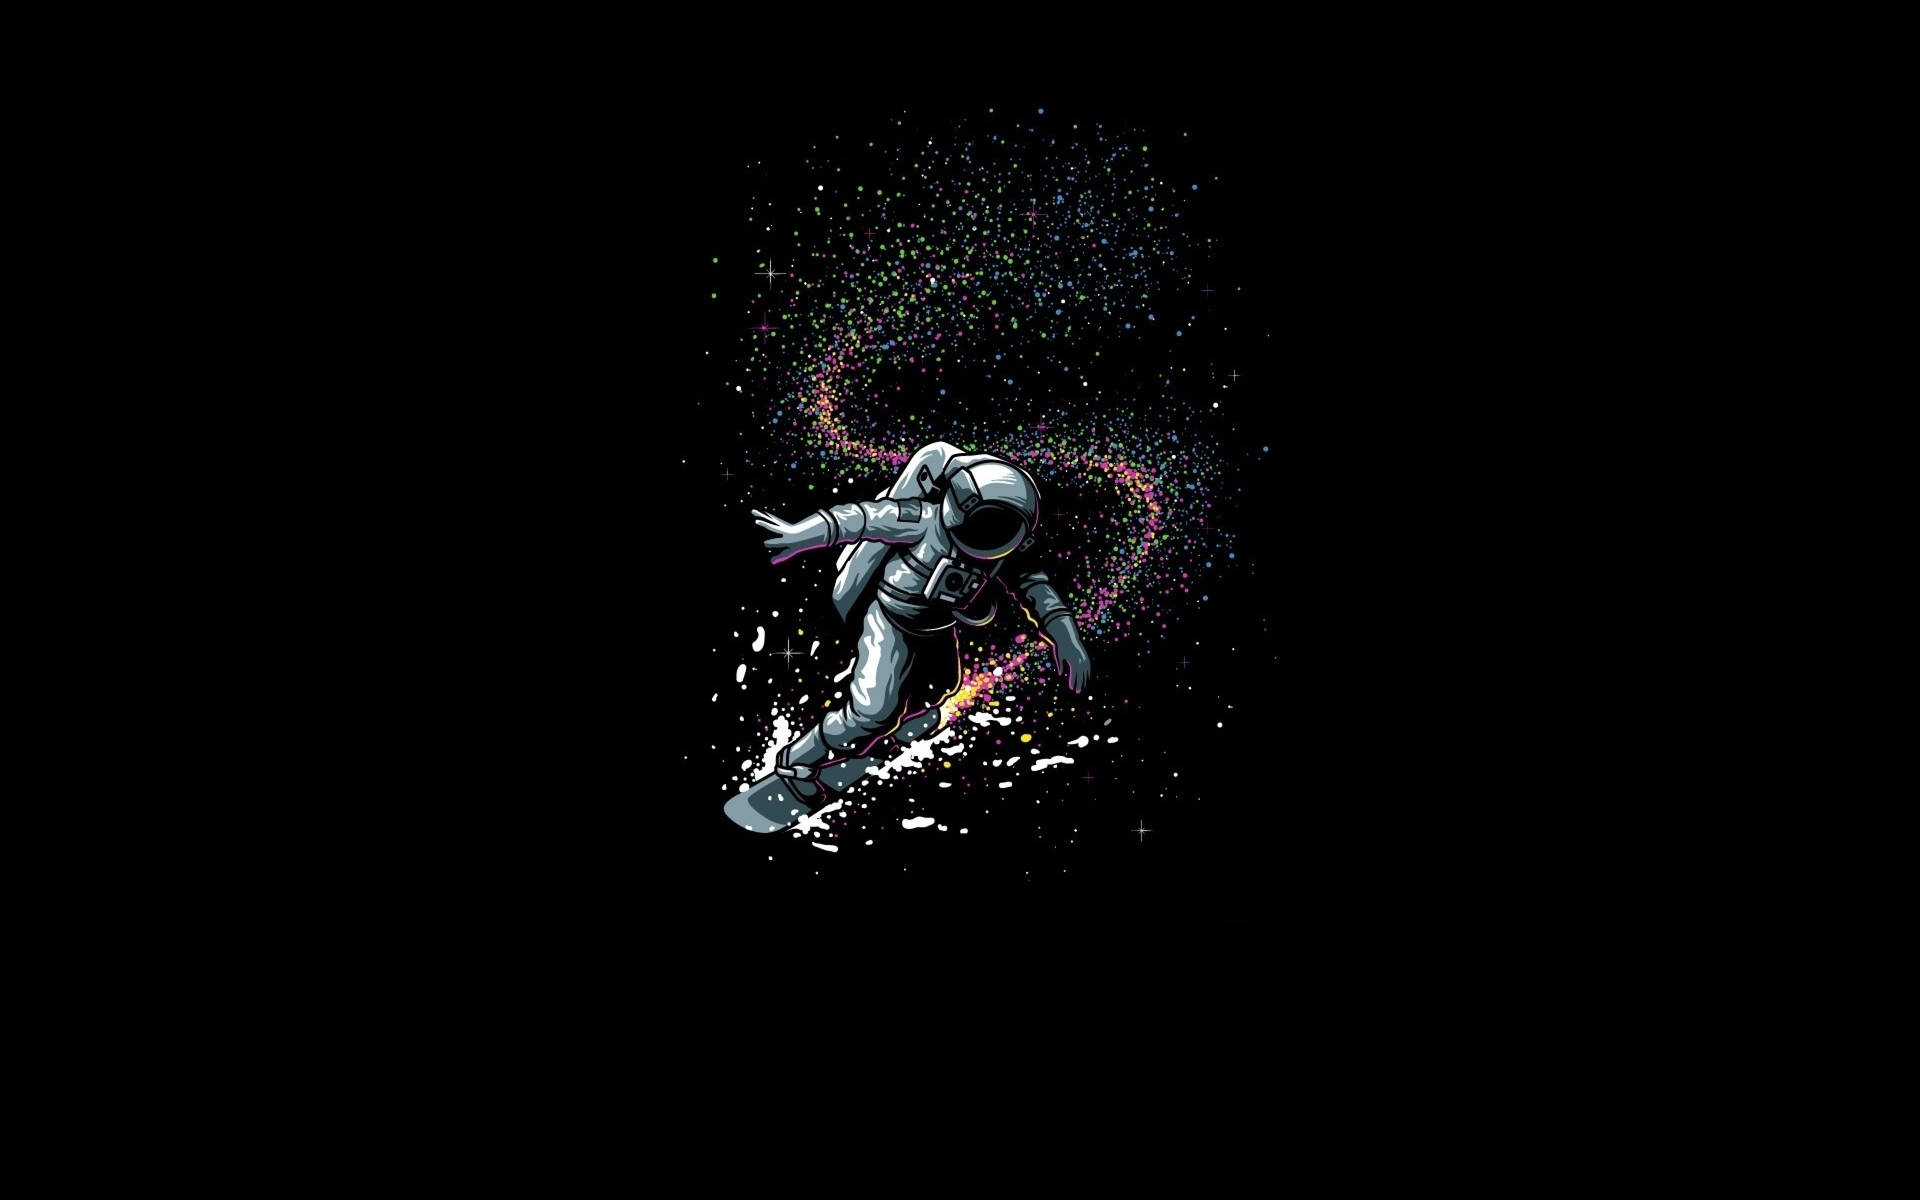 Astronaut Comet Surfing Graphic Art Wallpaper